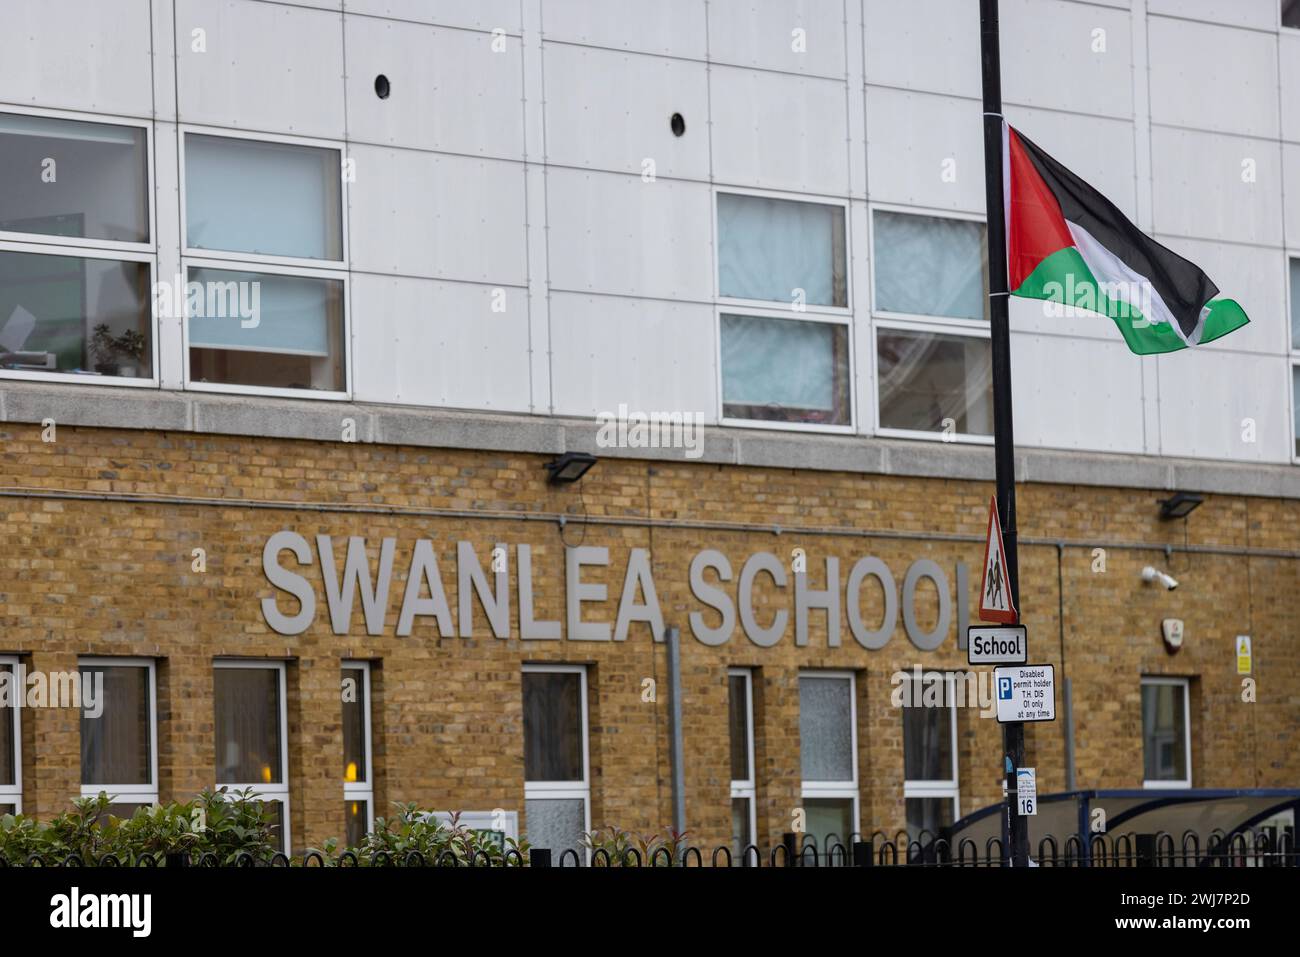 Swanlea Secondary School di Whitechapel, la comunità ebraica di East London in “stato di paura”, mentre le bandiere palestinesi volano fuori dalle scuole, Tower Hamlets, Regno Unito Foto Stock